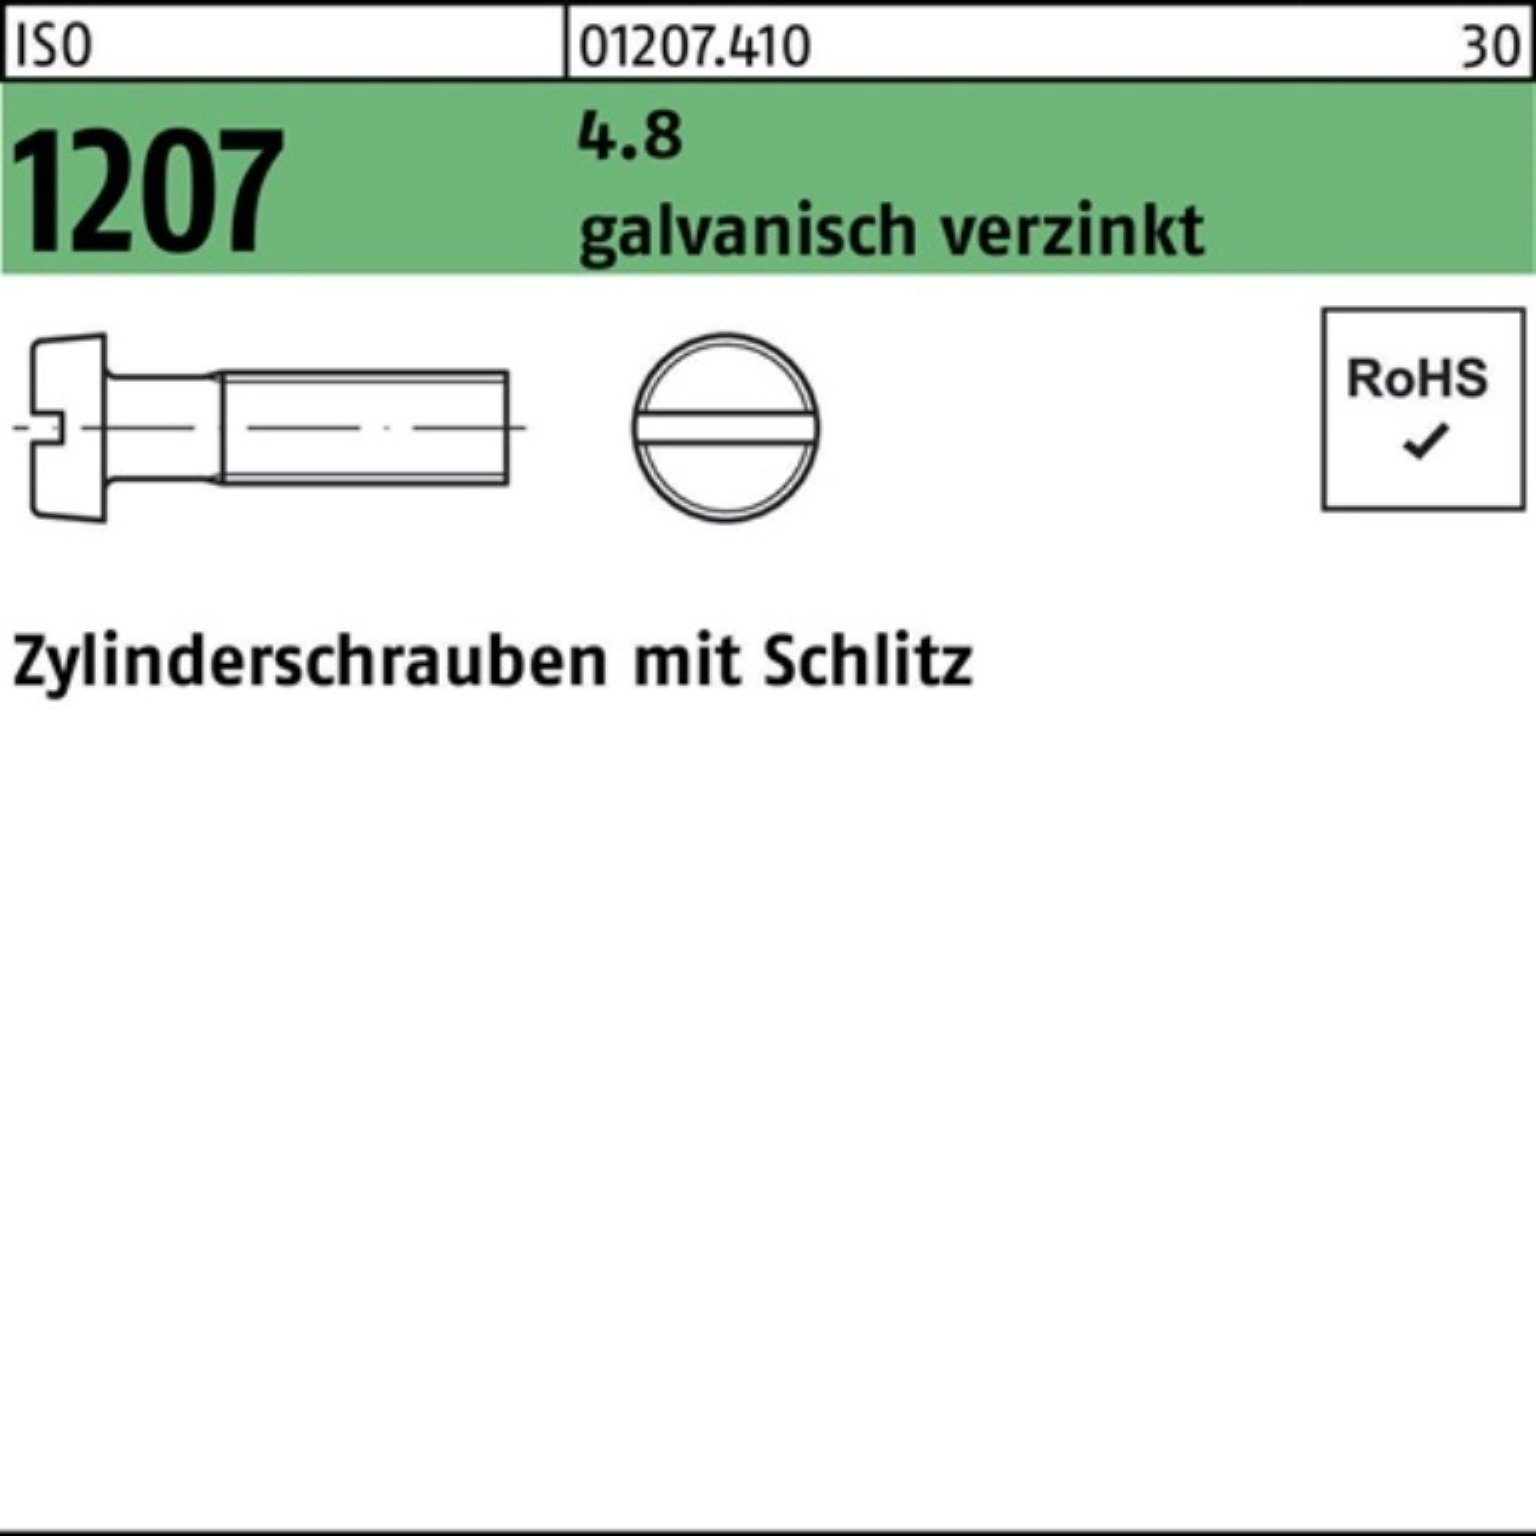 M2,5x Pack 20 200er Zylinderschraube Schlitz 5 Reyher 1207 galv.verz. 4.8 ISO Zylinderschraube